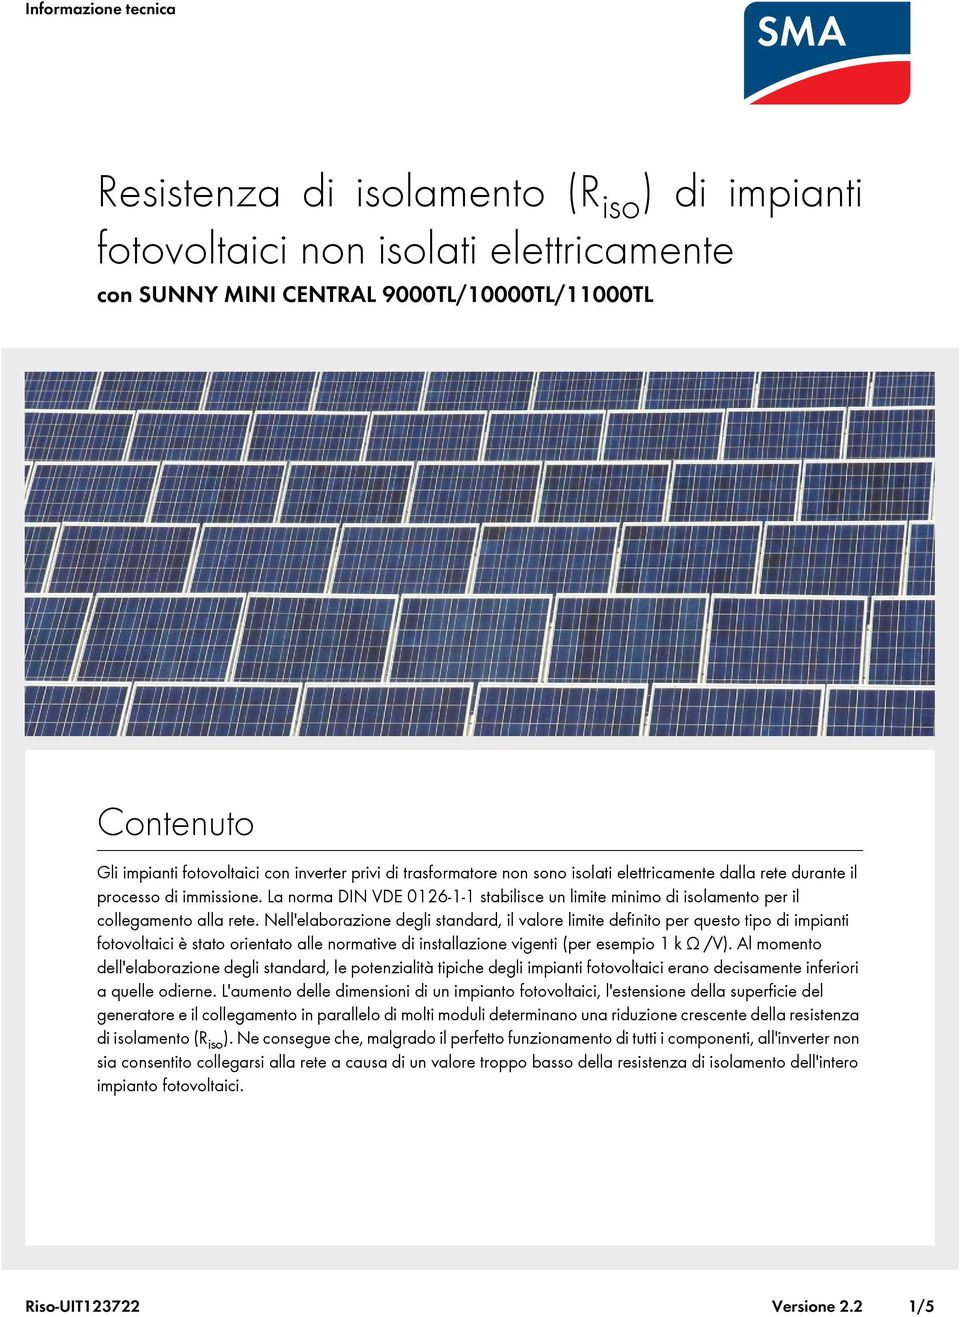 Nell'elaborazione degli standard, il valore limite definito per questo tipo di impianti fotovoltaici è stato orientato alle normative di installazione vigenti (per esempio 1 k Ω /V).